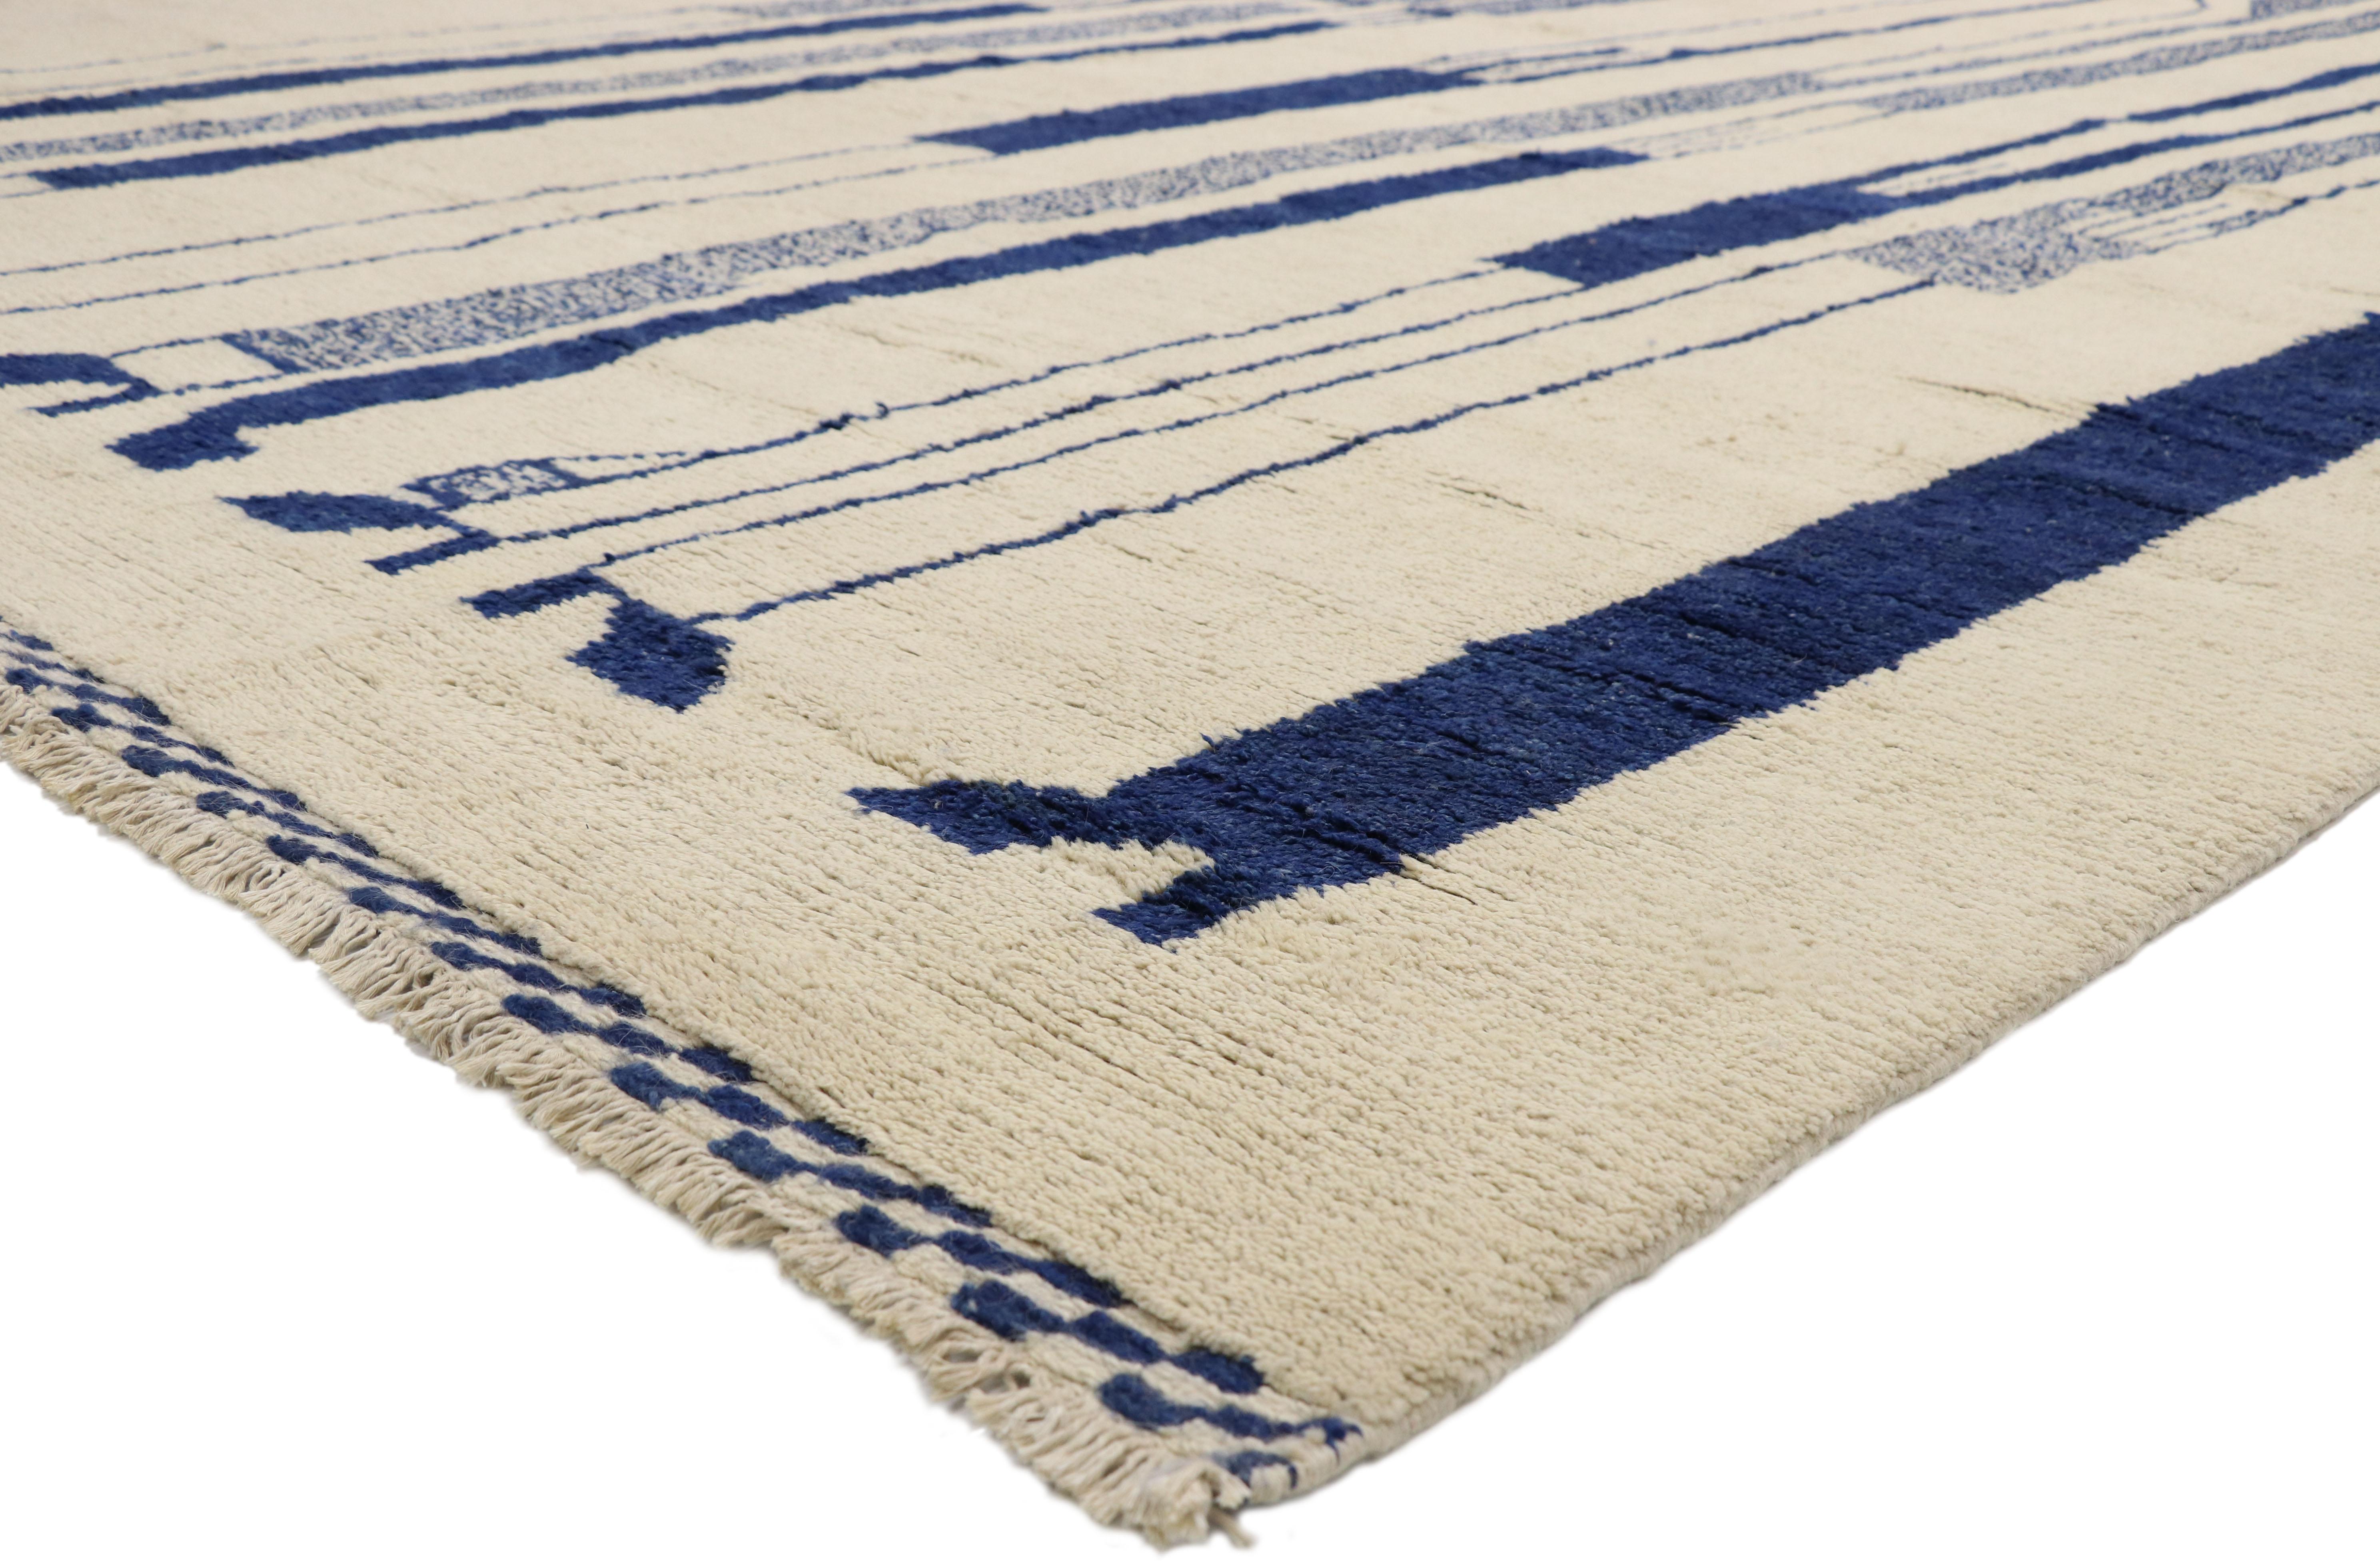 80532, neuer zeitgenössischer marokkanischer Teppich Inspiriert von Alberto Giacometti Dogon-Stamm. Dieser handgeknüpfte Wollteppich im modernen marokkanischen Stil zeigt langgestreckte Silhouetten in einer blauen Farbpalette vor einem unifarbenen,